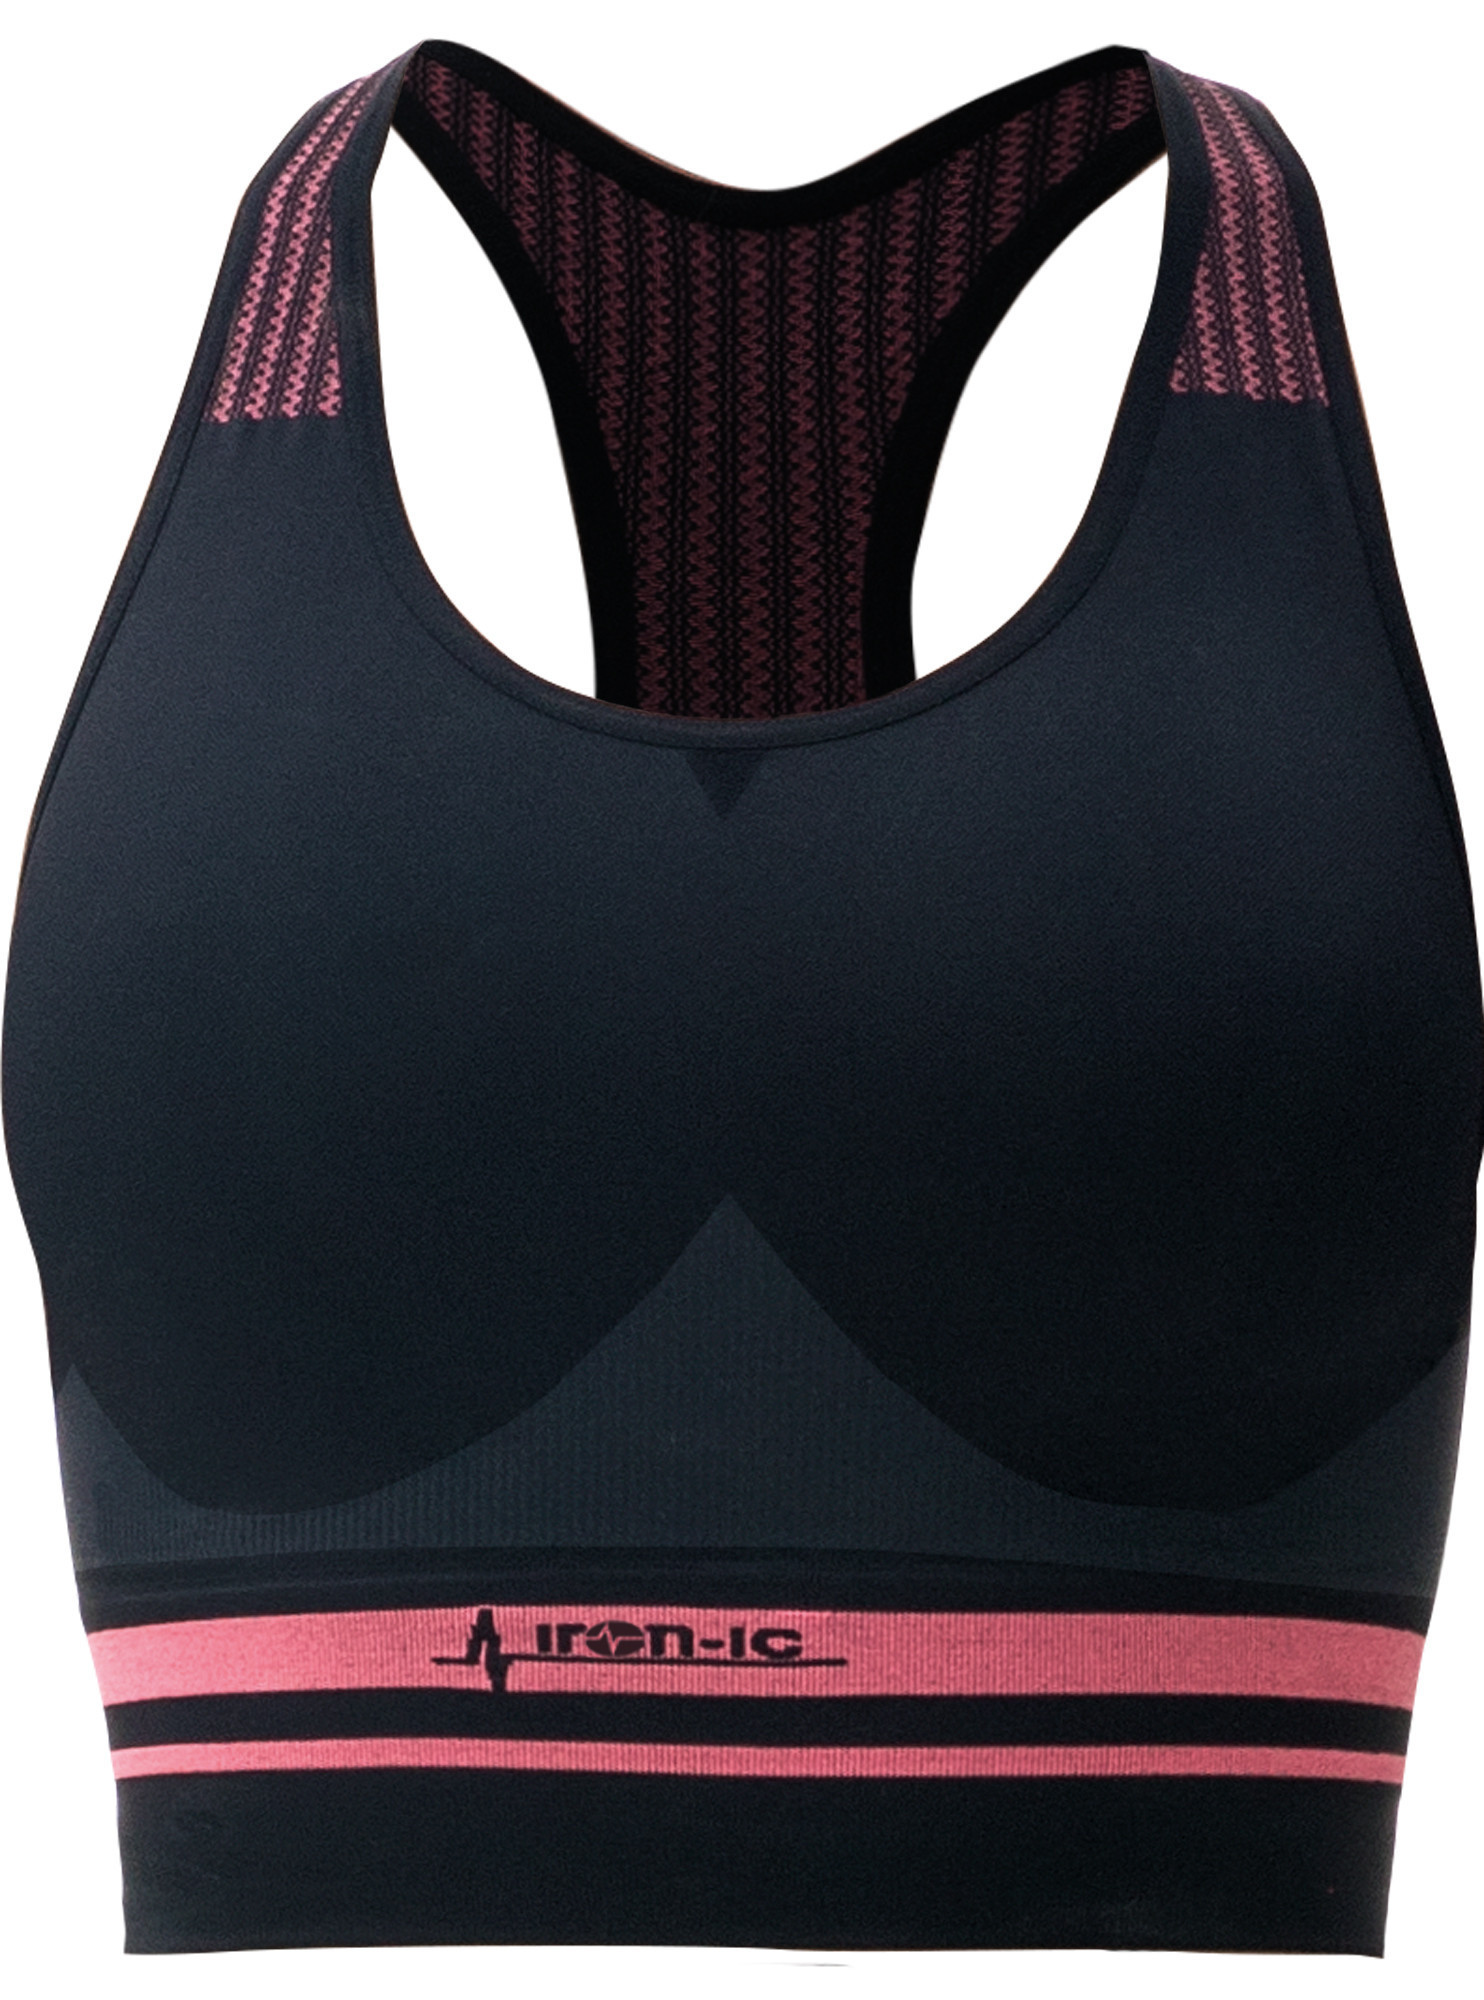 Sportovní podprsenka fitness IRON-IC - střední podpora - černo-růžová Barva: Černo-růžová, Velikost: S/M